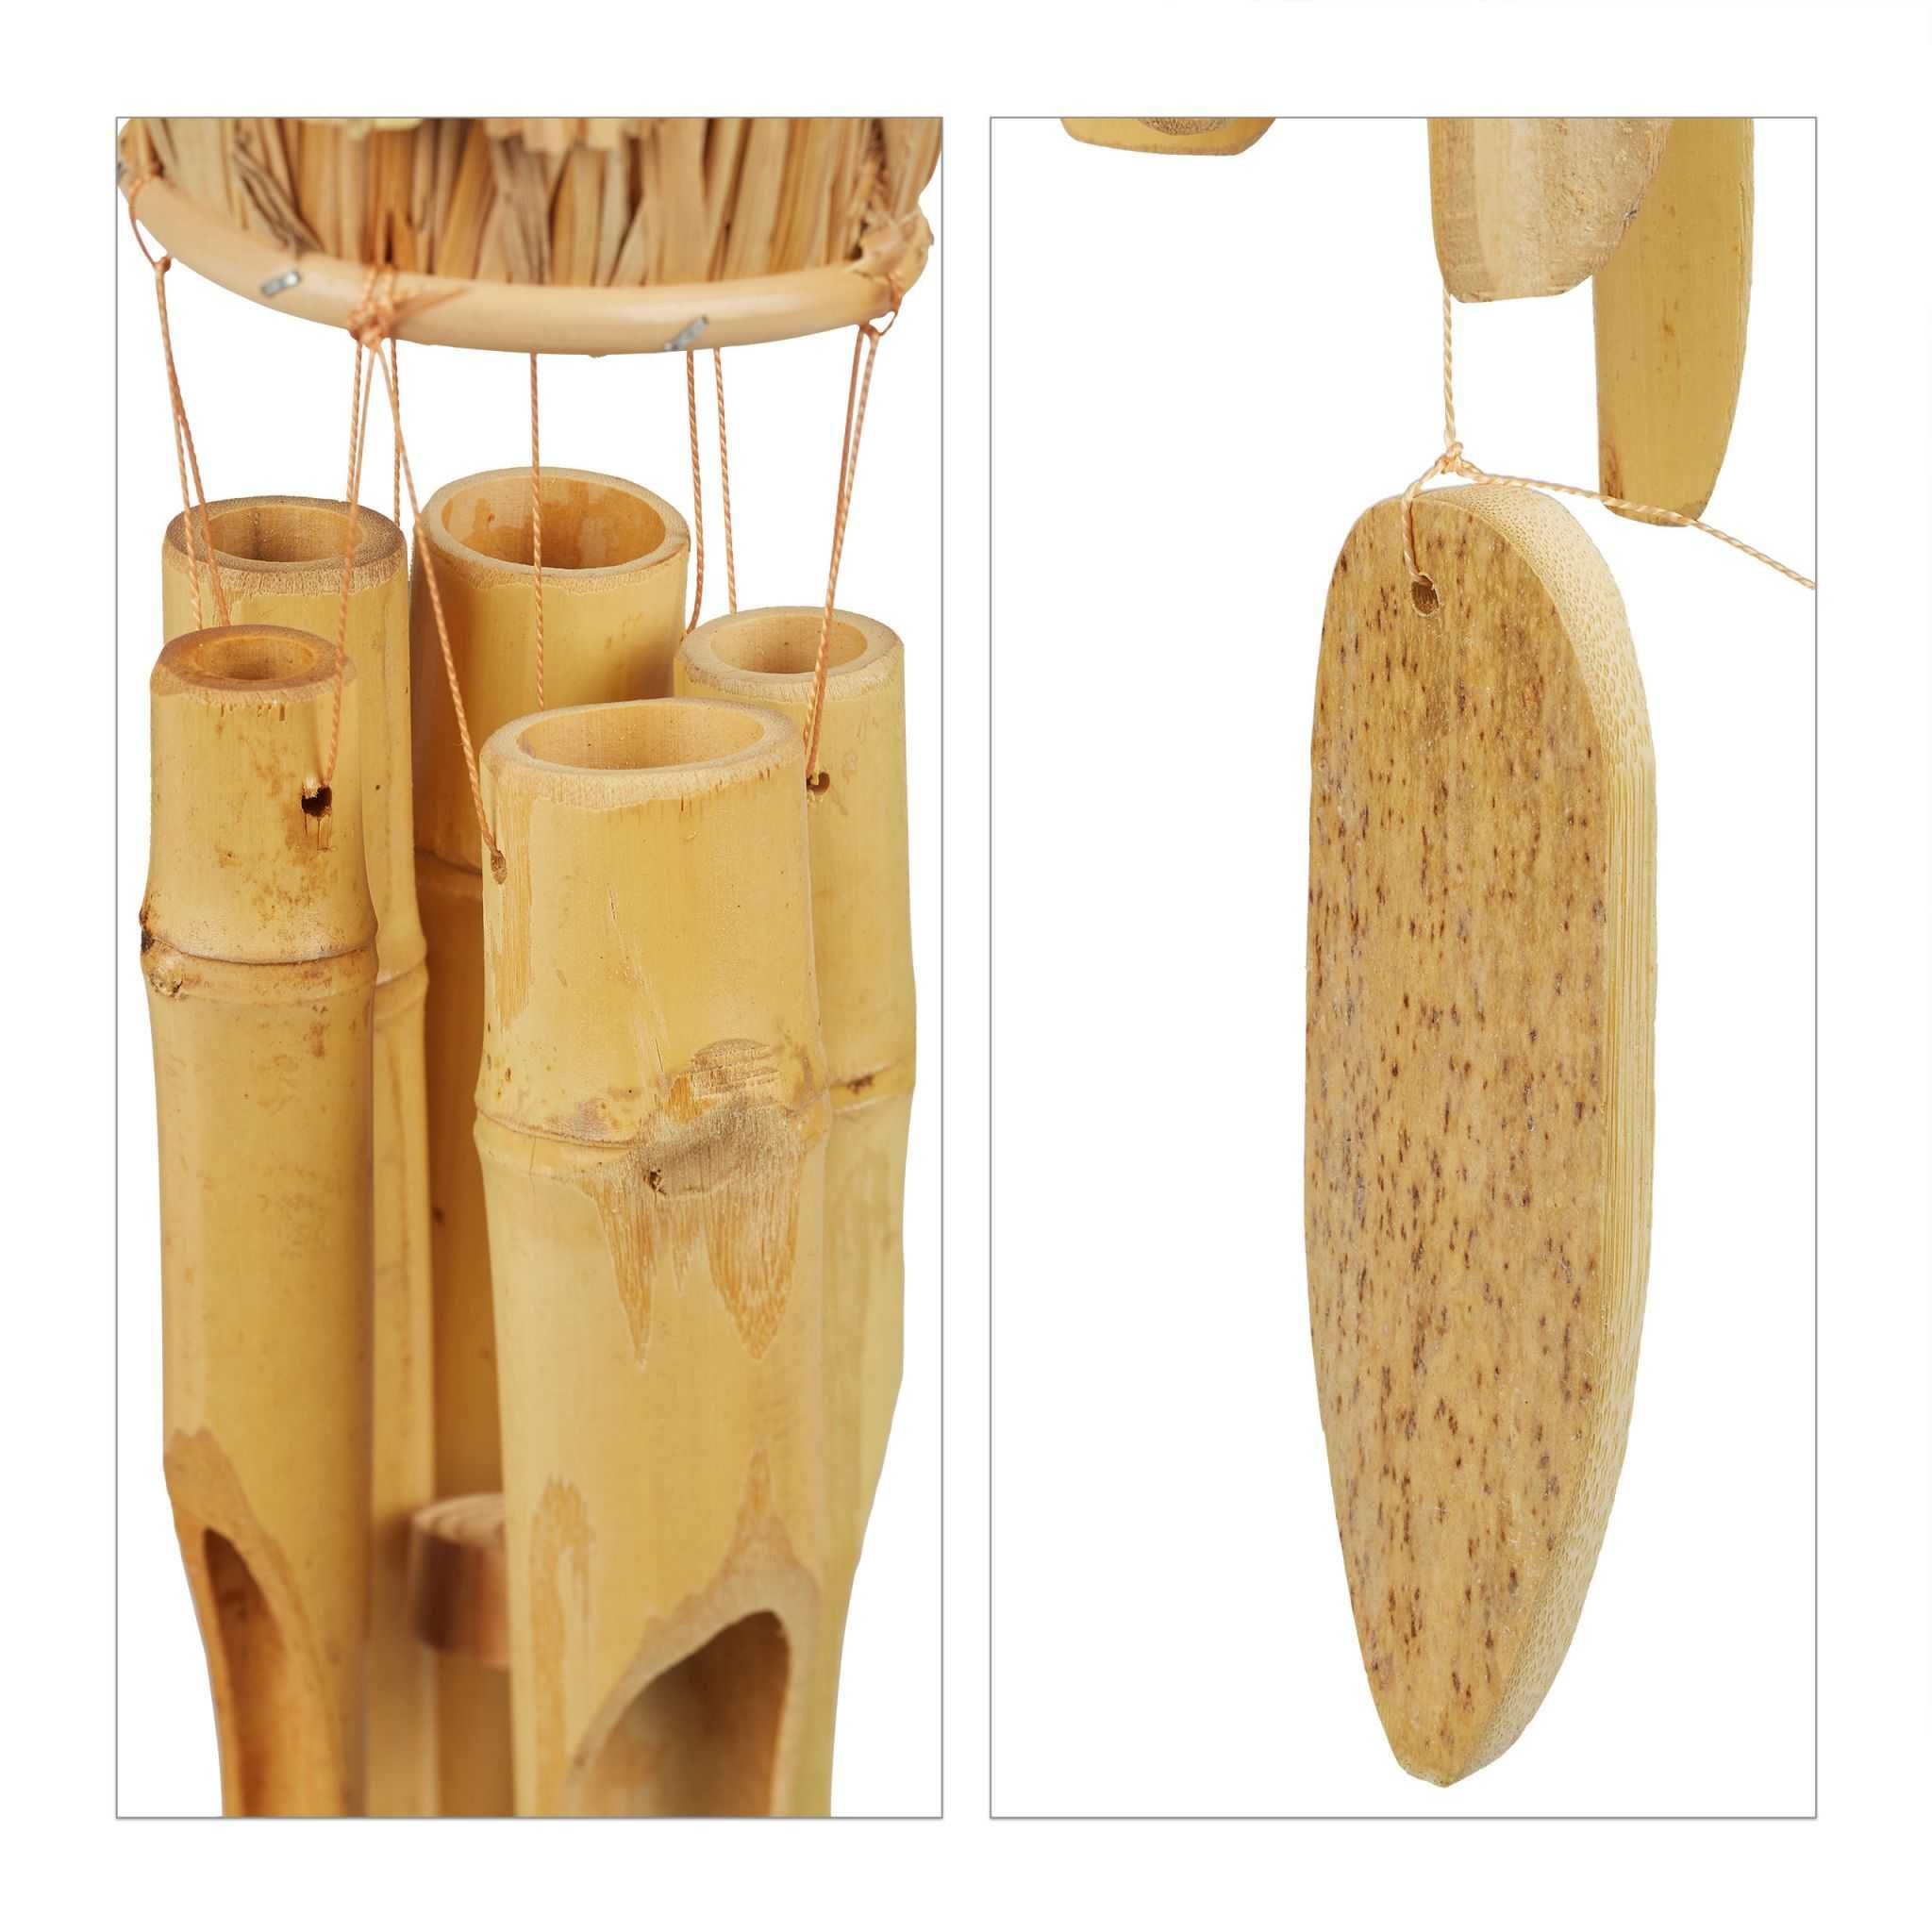 Clopot de vant cu casuta pentru pasari din bambus si paie 69 x 16 cm